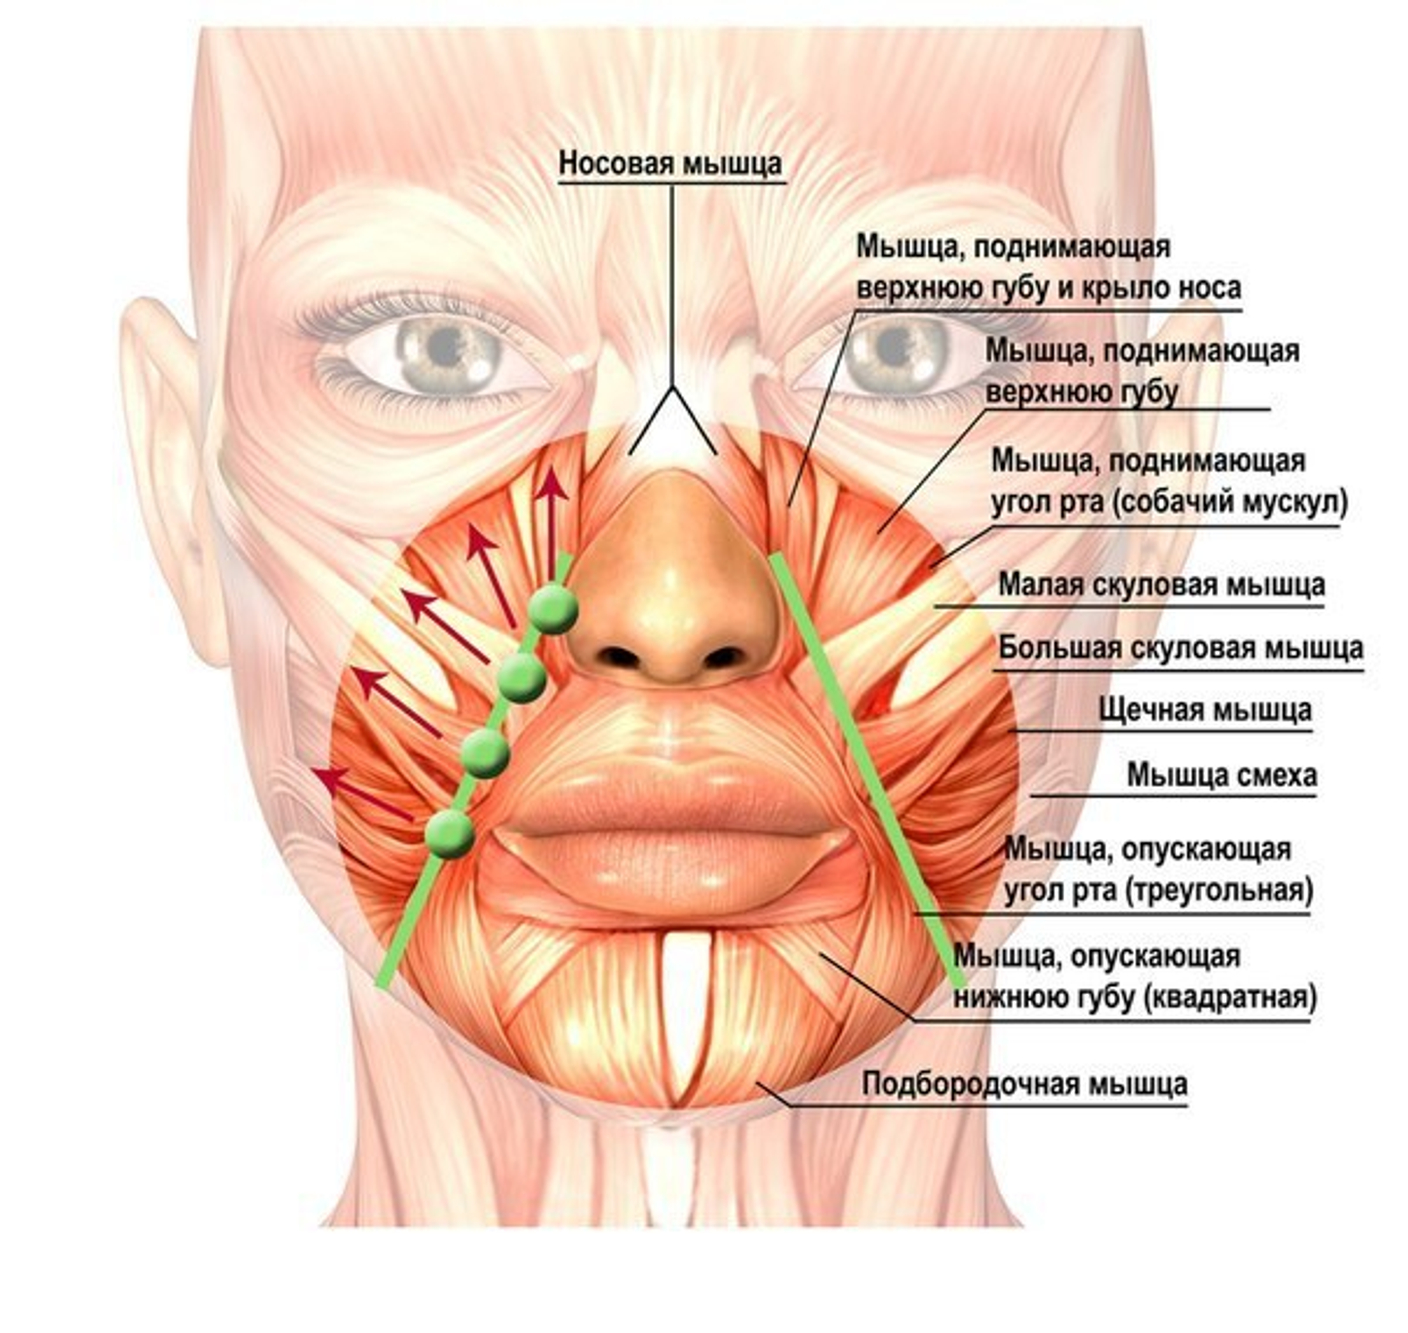 Немеет рот и язык. Мышцы лица носогубные складки анатомия. Мышца поднимающая верхнюю губу. Мышца поднимающая крыло носа. Гипертонус круговой мышцы рта.